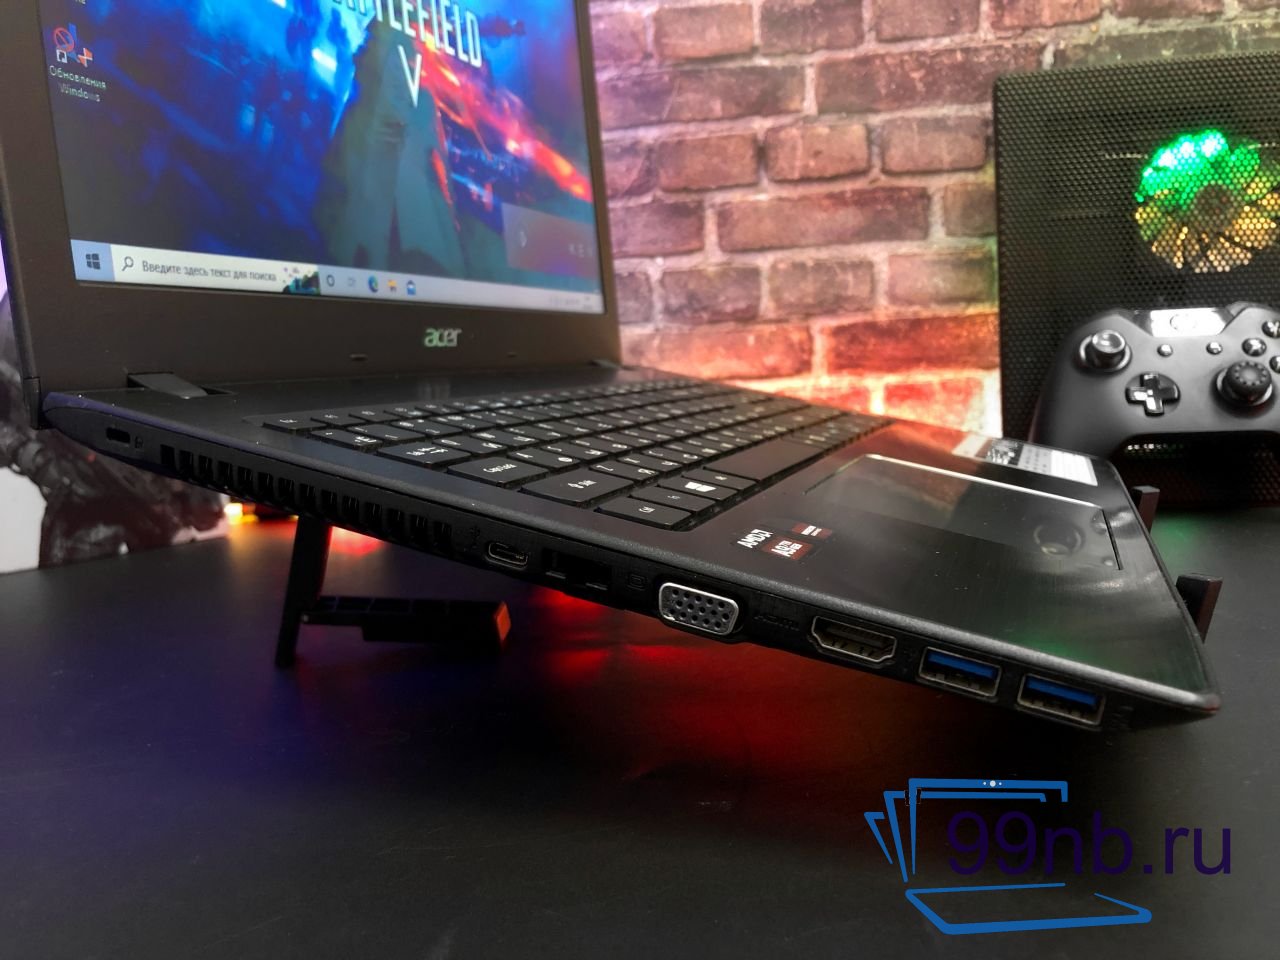  Ноутбук Acer Aspire для облачного гейминга + SSD